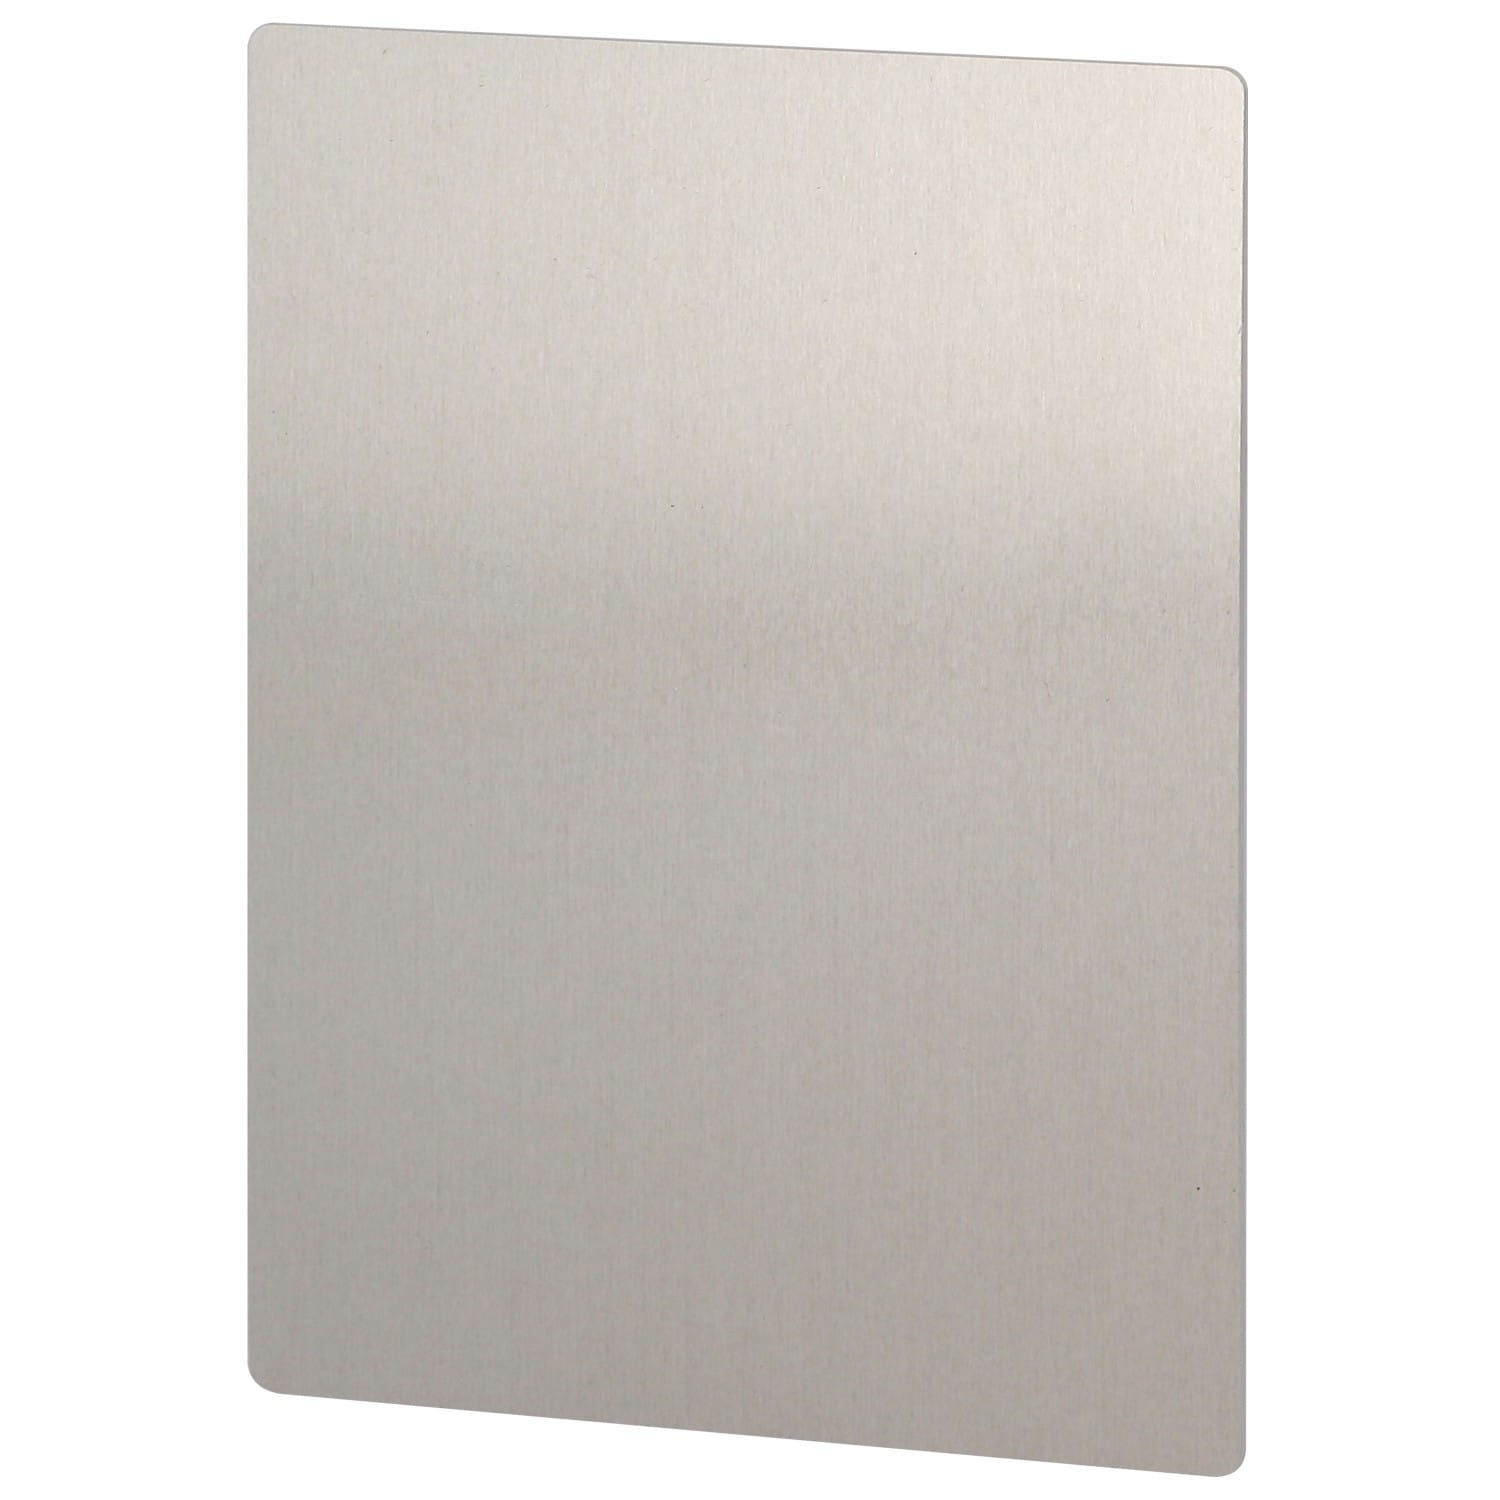 Plaque en acier blanc 20 x 30 cm Sublimation Transfert Thermique